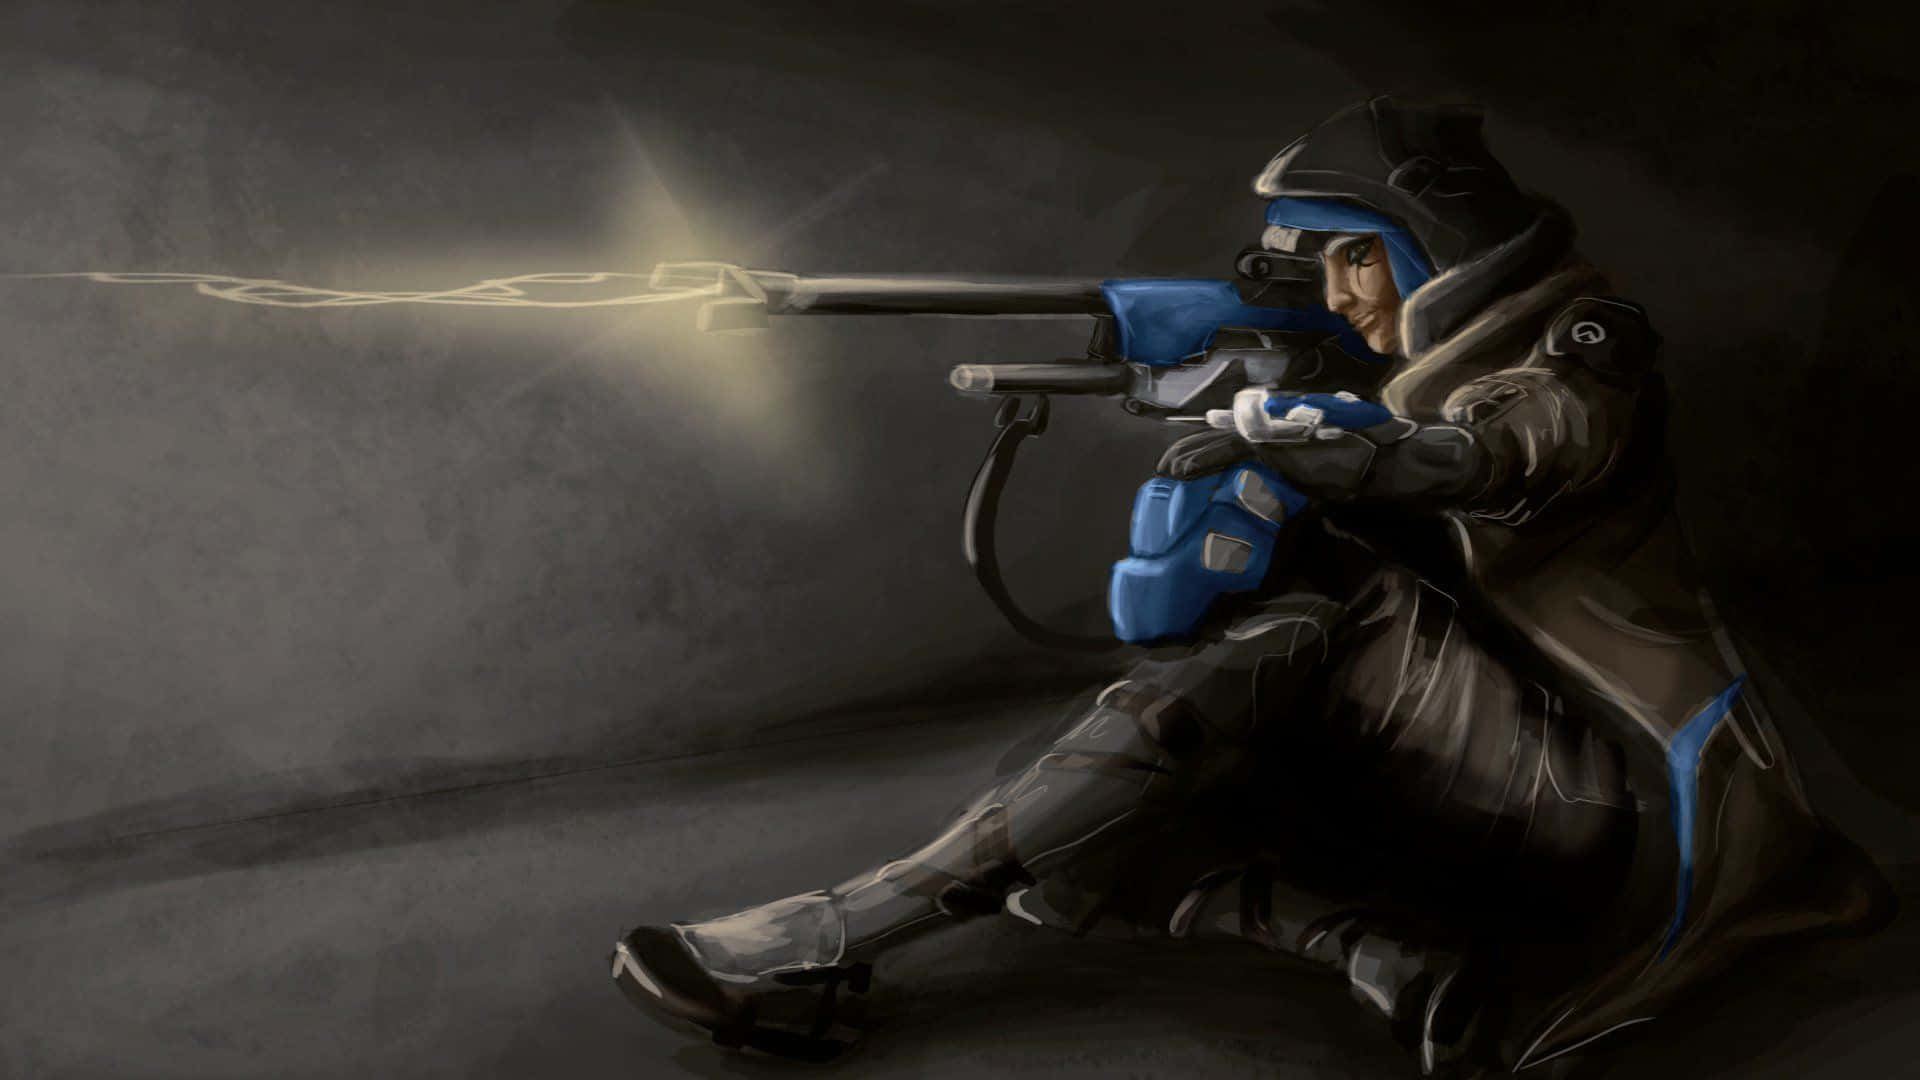 Overwatch hero Ana Amari with her classic sniper rifle Wallpaper